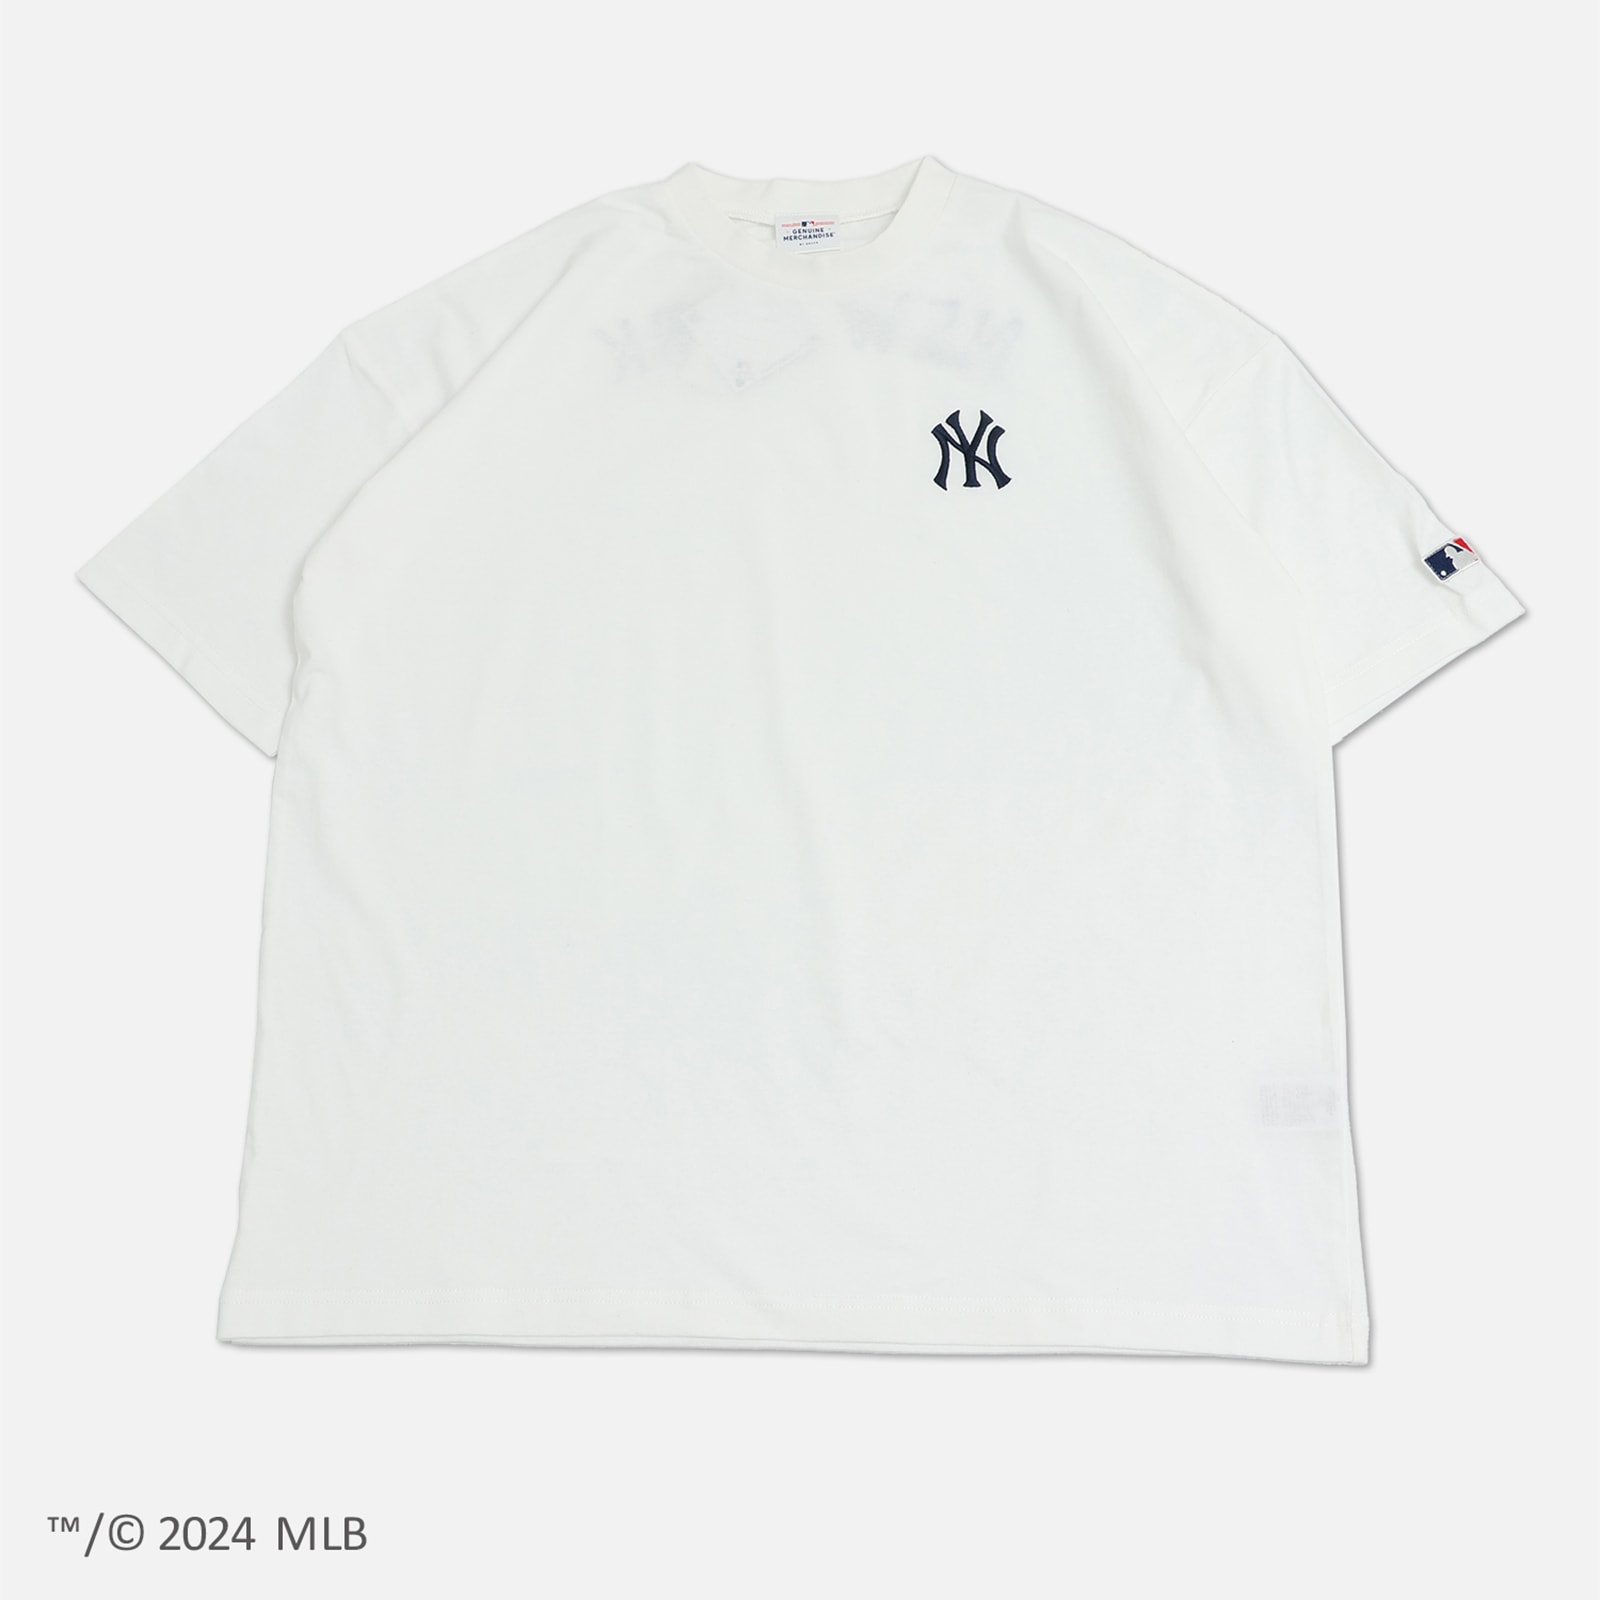 ネコポス送料無料 MLB Tシャツ 半袖 ドジャース ヤンキース アスレチックス メンズ レディース...